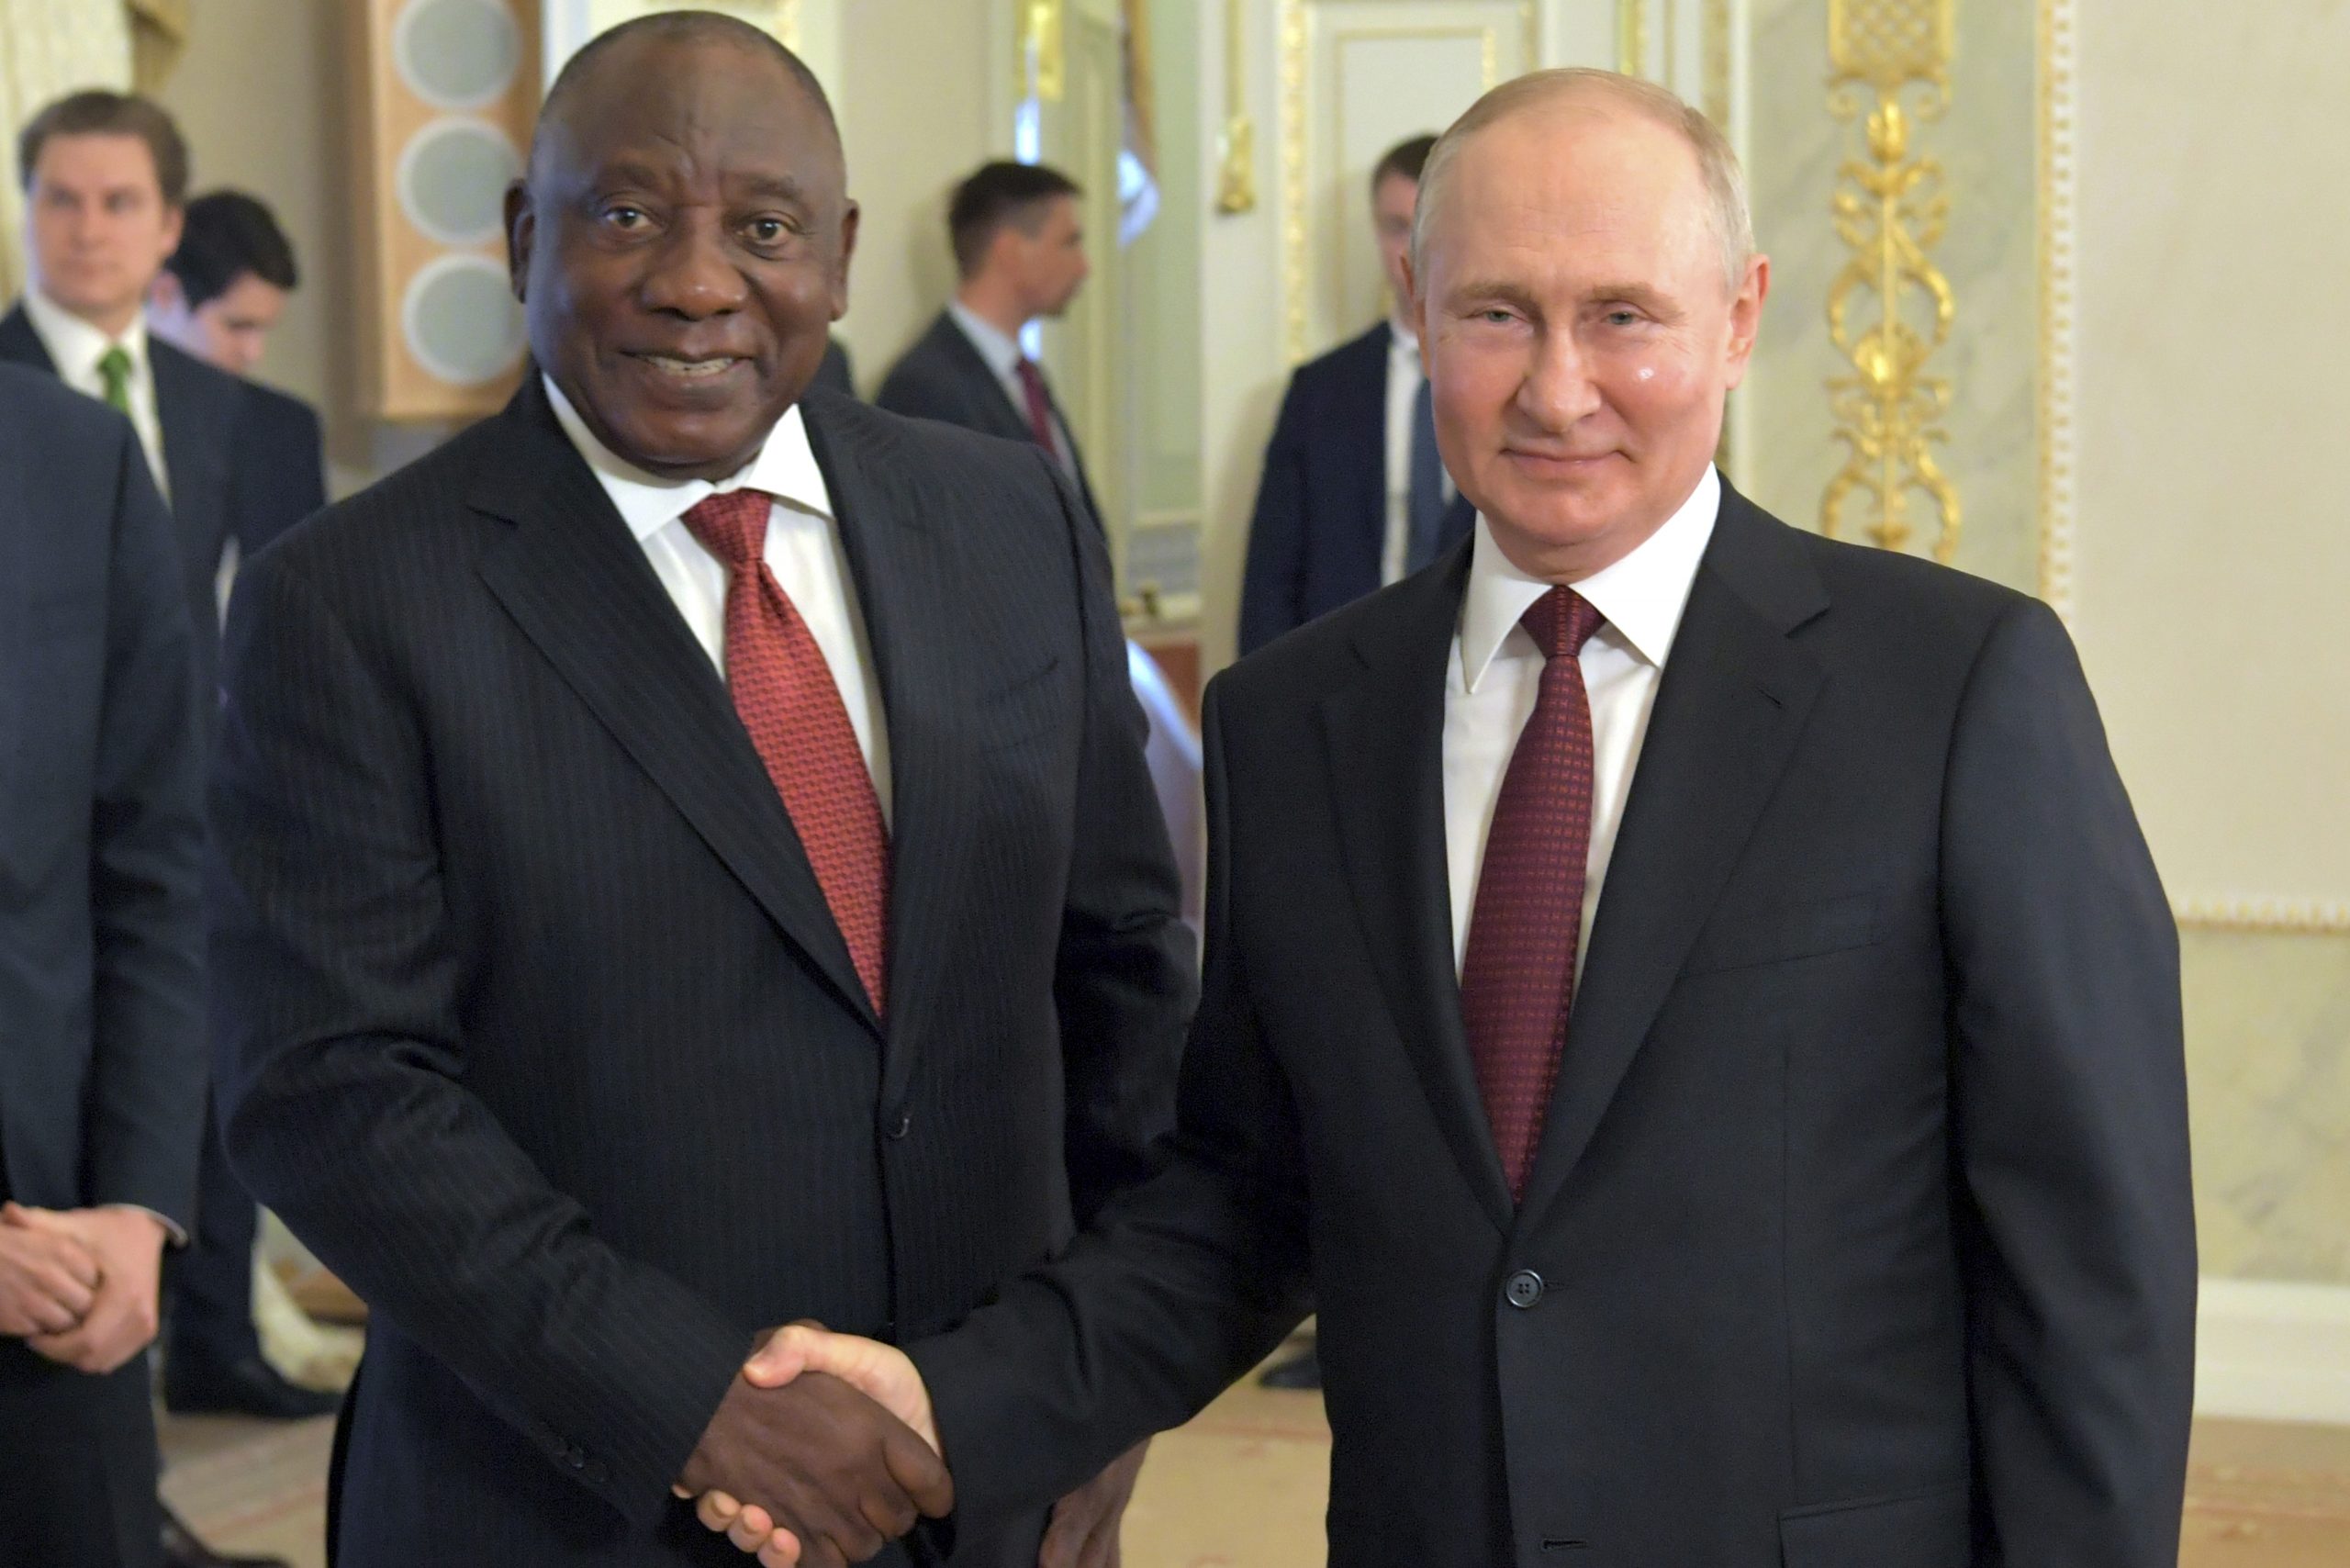 Президент ЮАР попросил у МУС разрешения не арестовывать Путина